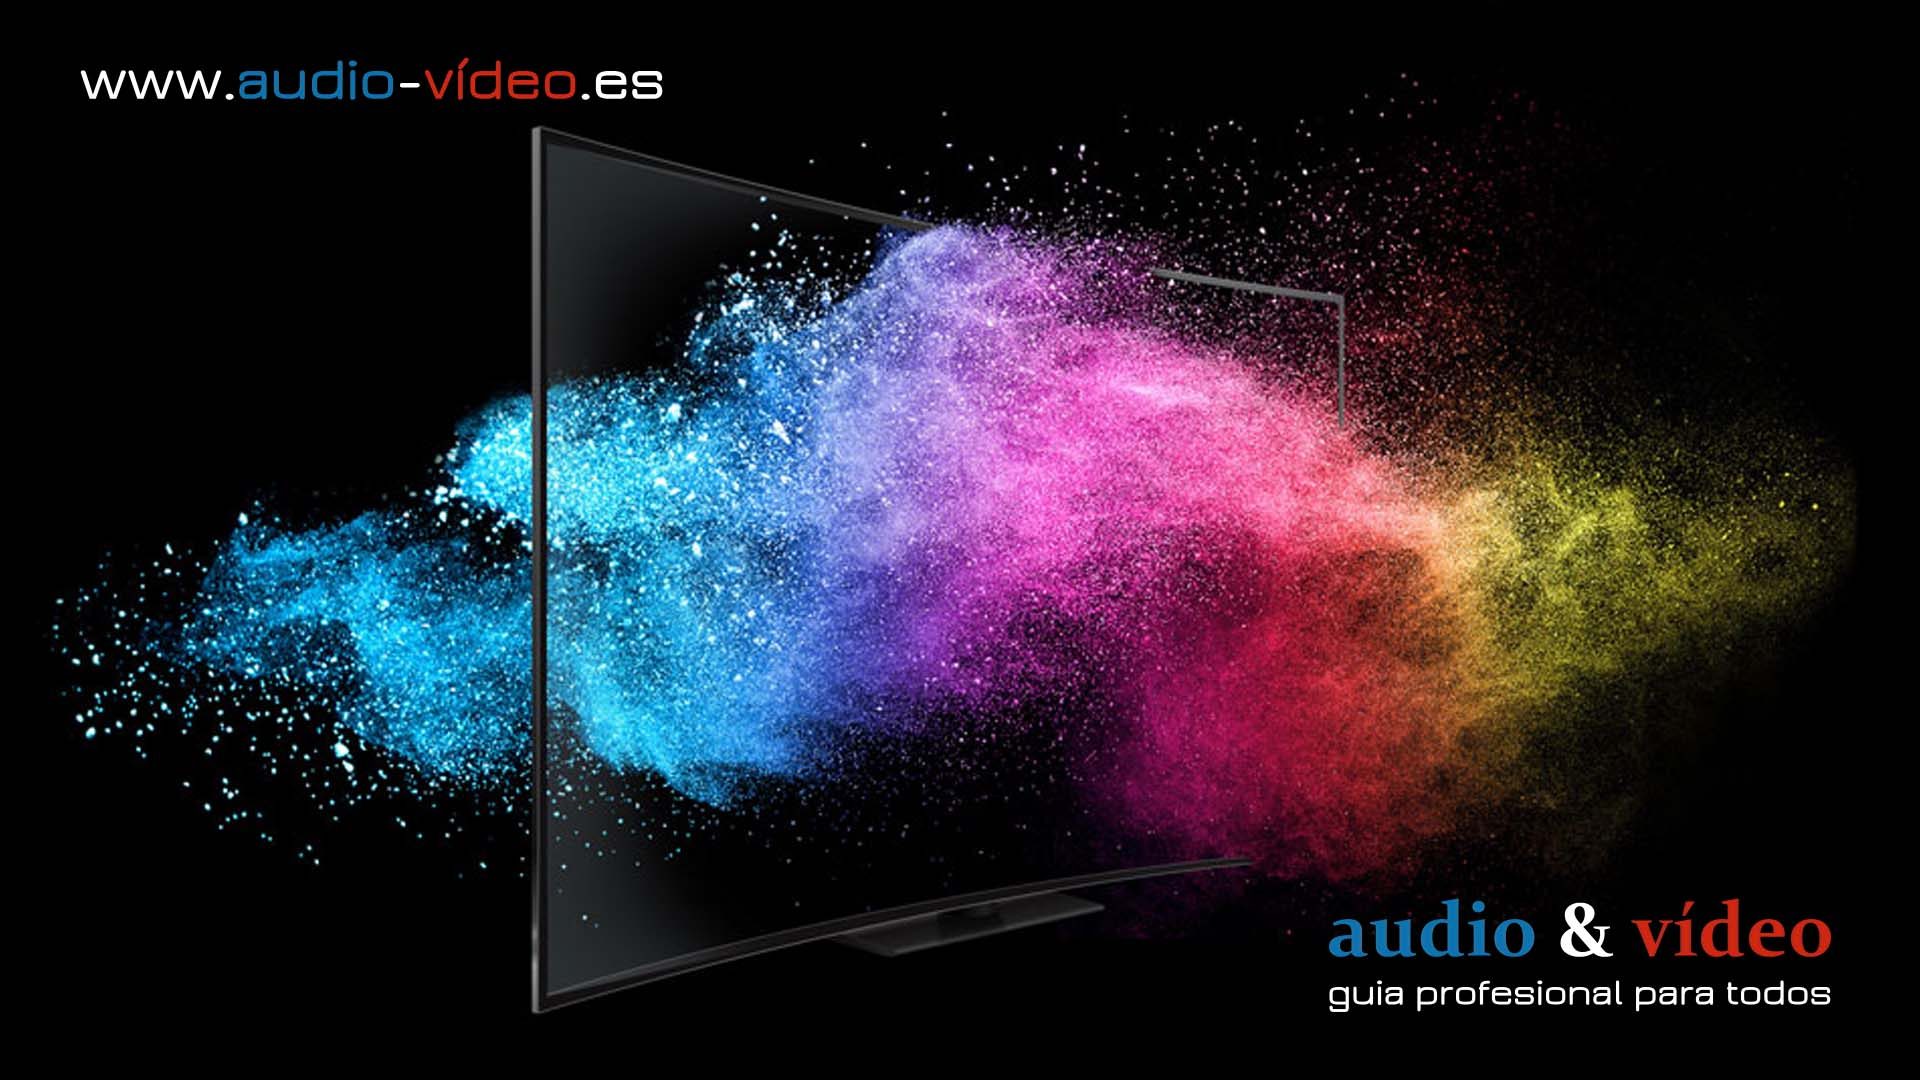 Los televisores Samsung QLED de 2020 llegan al mercado español